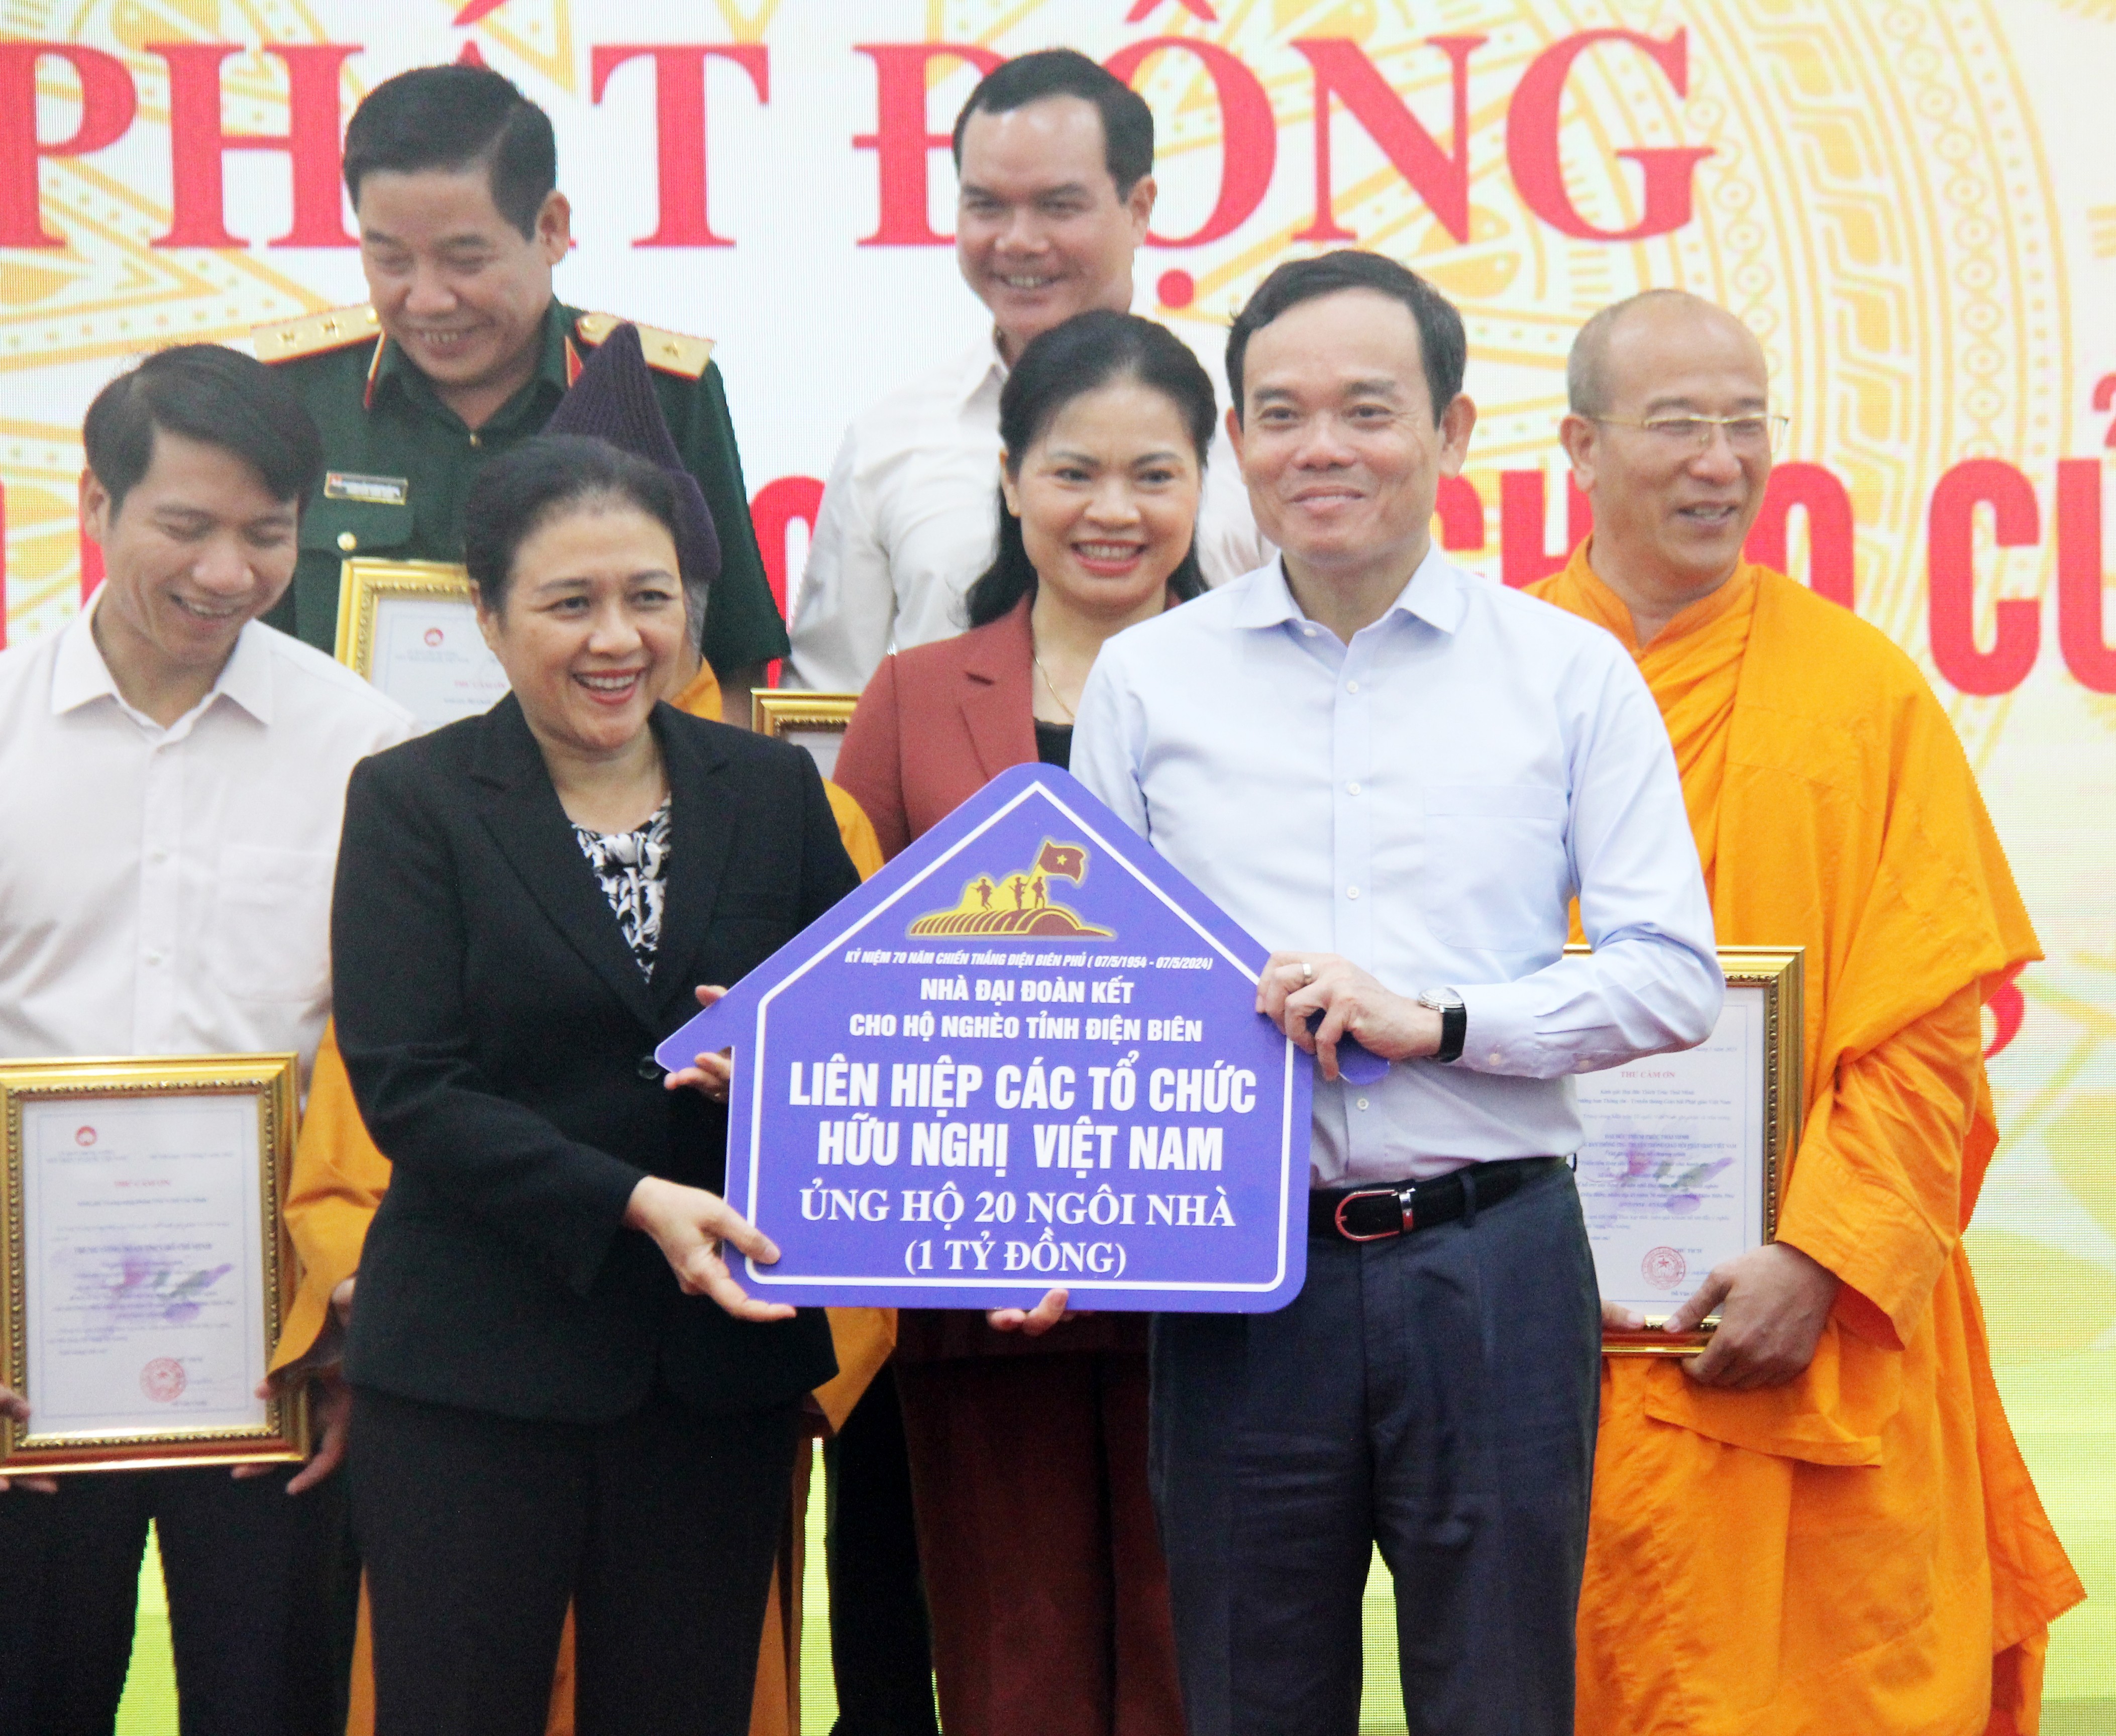 Trao kinh phí hỗ trợ xây dựng 4.000 căn nhà đại đoàn kết cho tỉnh Điện Biên